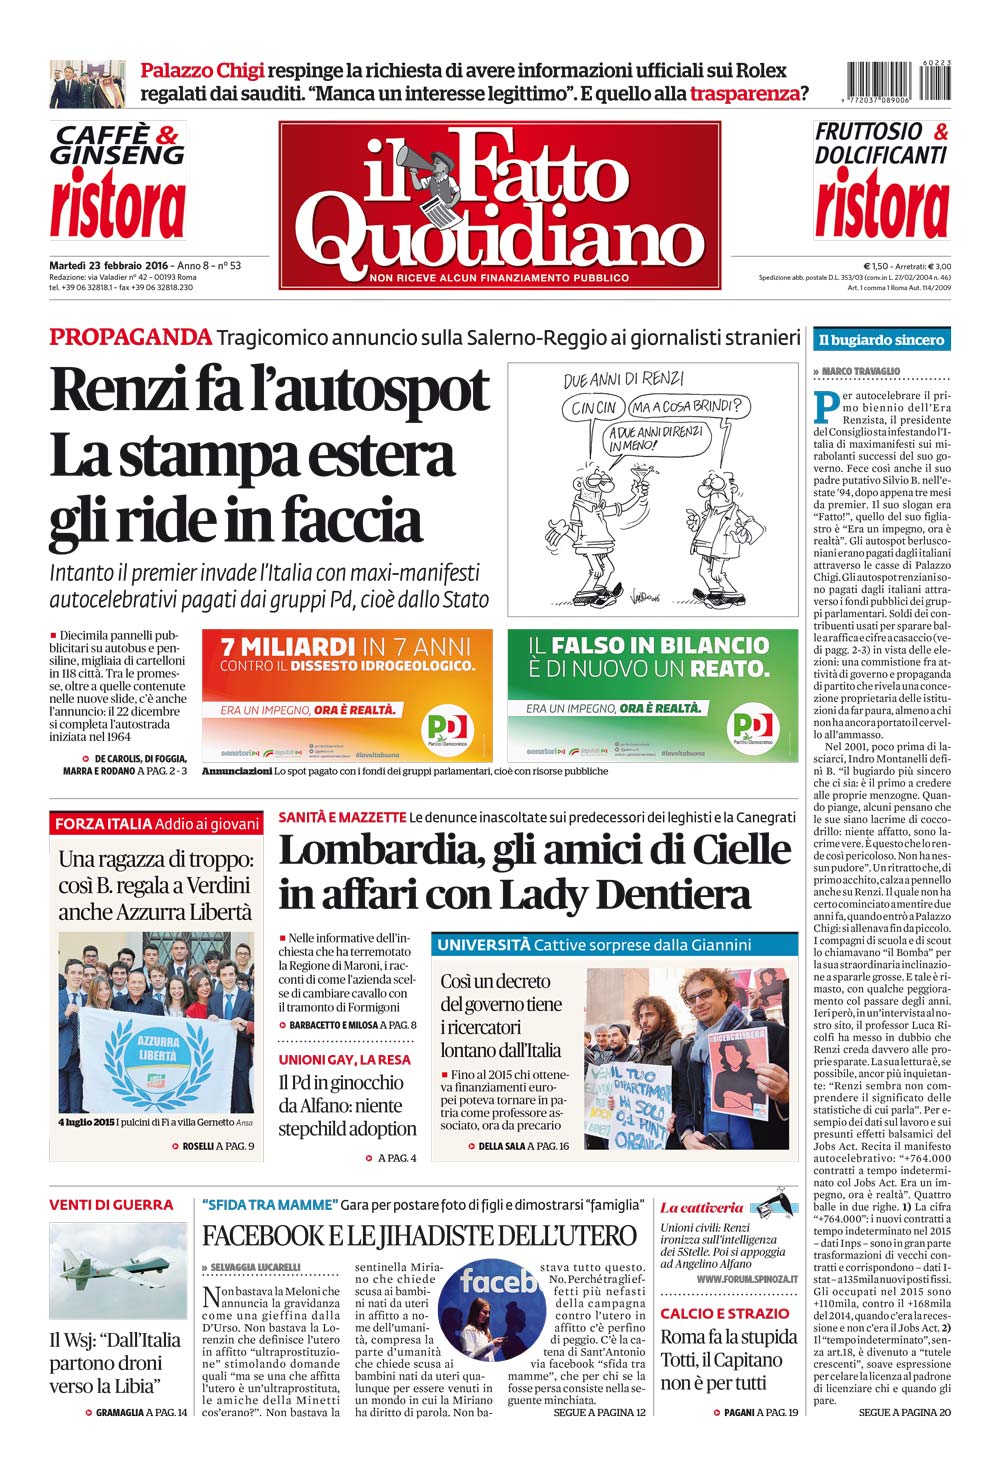 Prima Pagina Il Fatto Quotidiano - Renzi fa l’autospot. La stampa estera gli ride in faccia